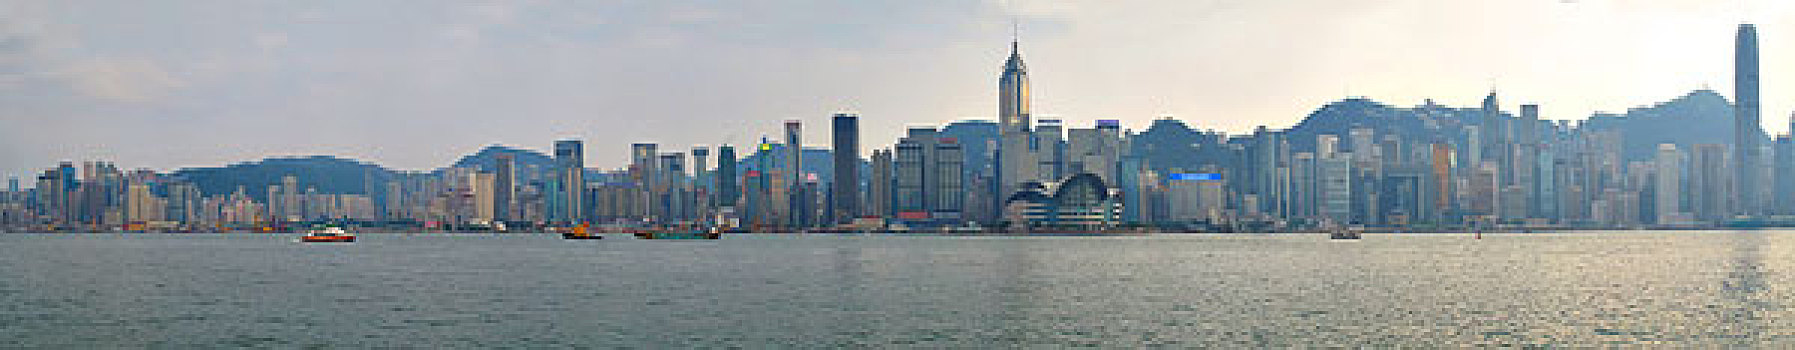 香港九龙维多利亚湾全景图